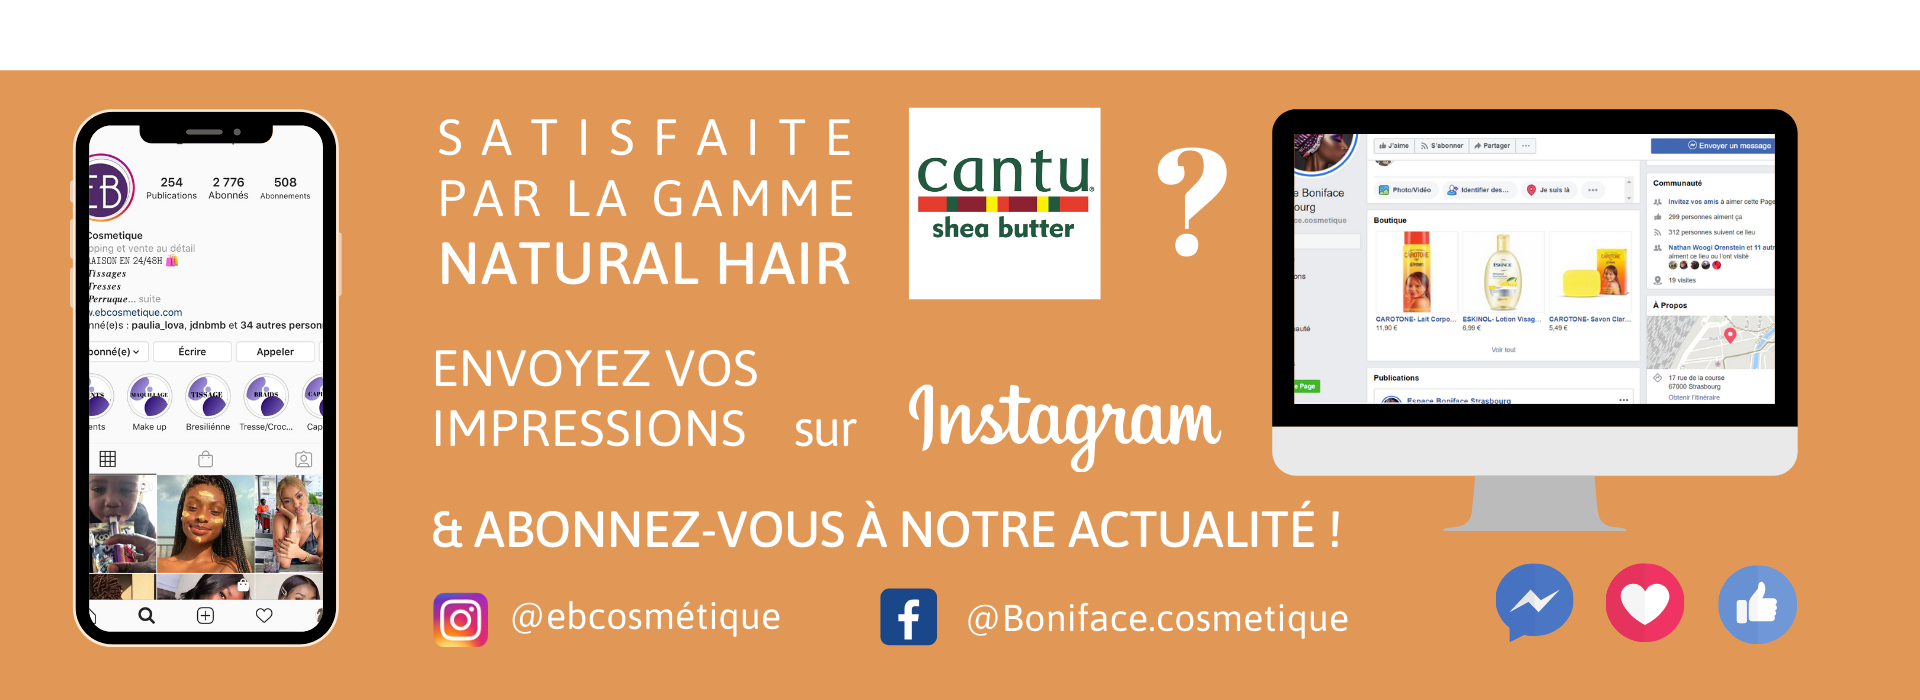 fiche produit ebcosmetique cantu shea butter natural hair Wave Whip Curling Mousse routine capillaire afro bouclé facebook instagram